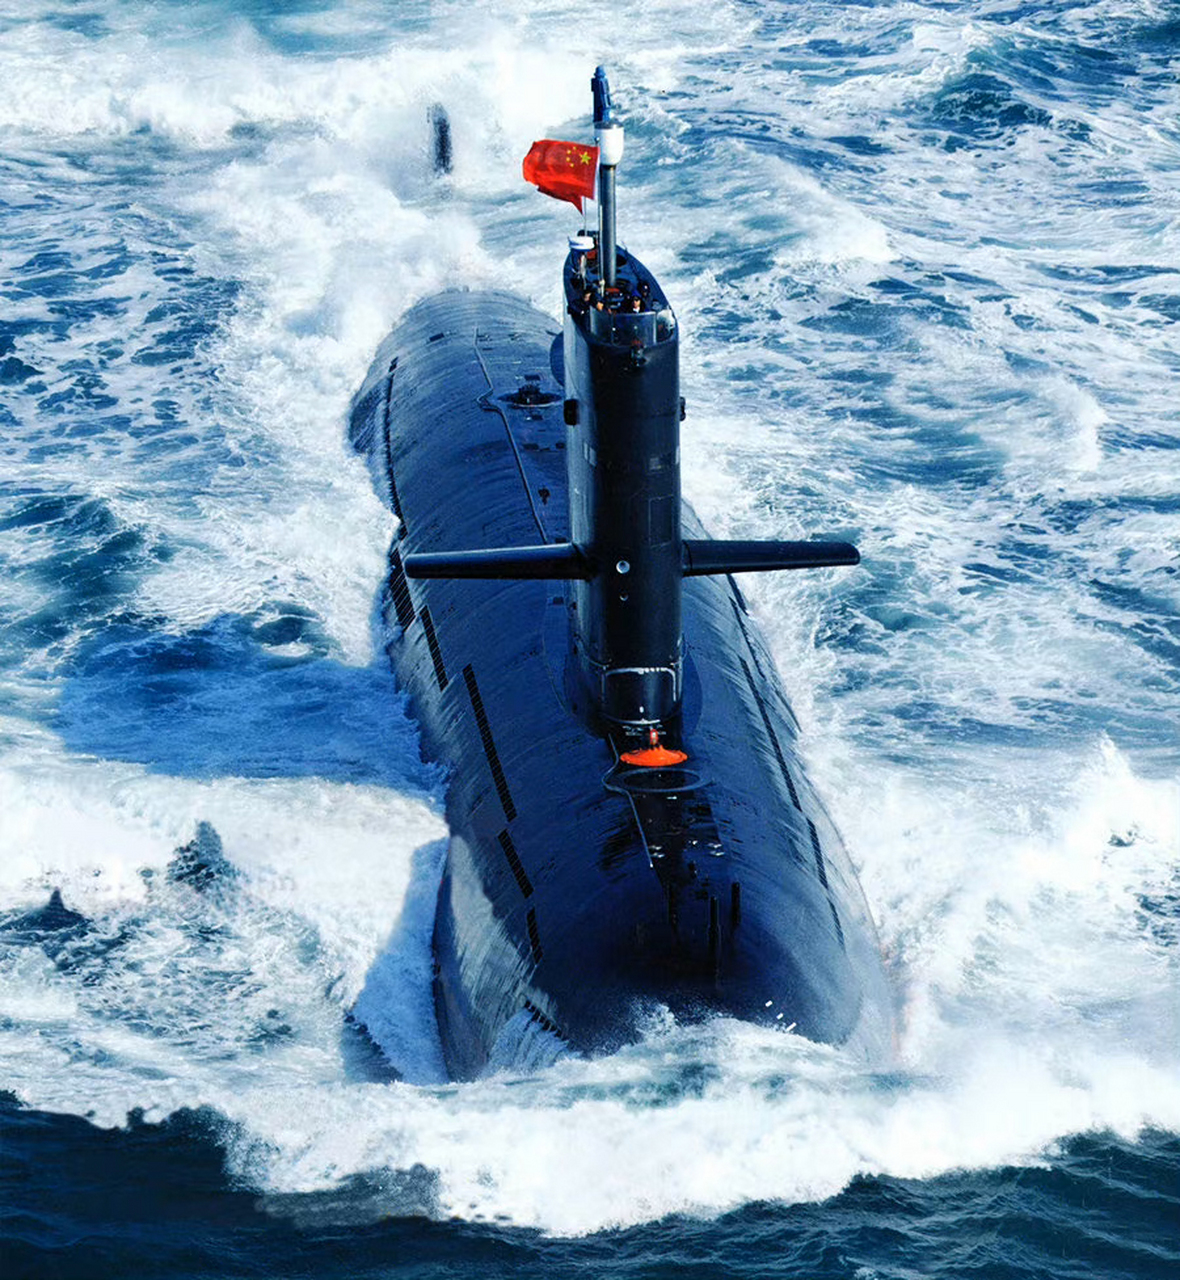 我国海军某部装备的039g型常规潜艇,这一组照片有10多年了,个人感觉这